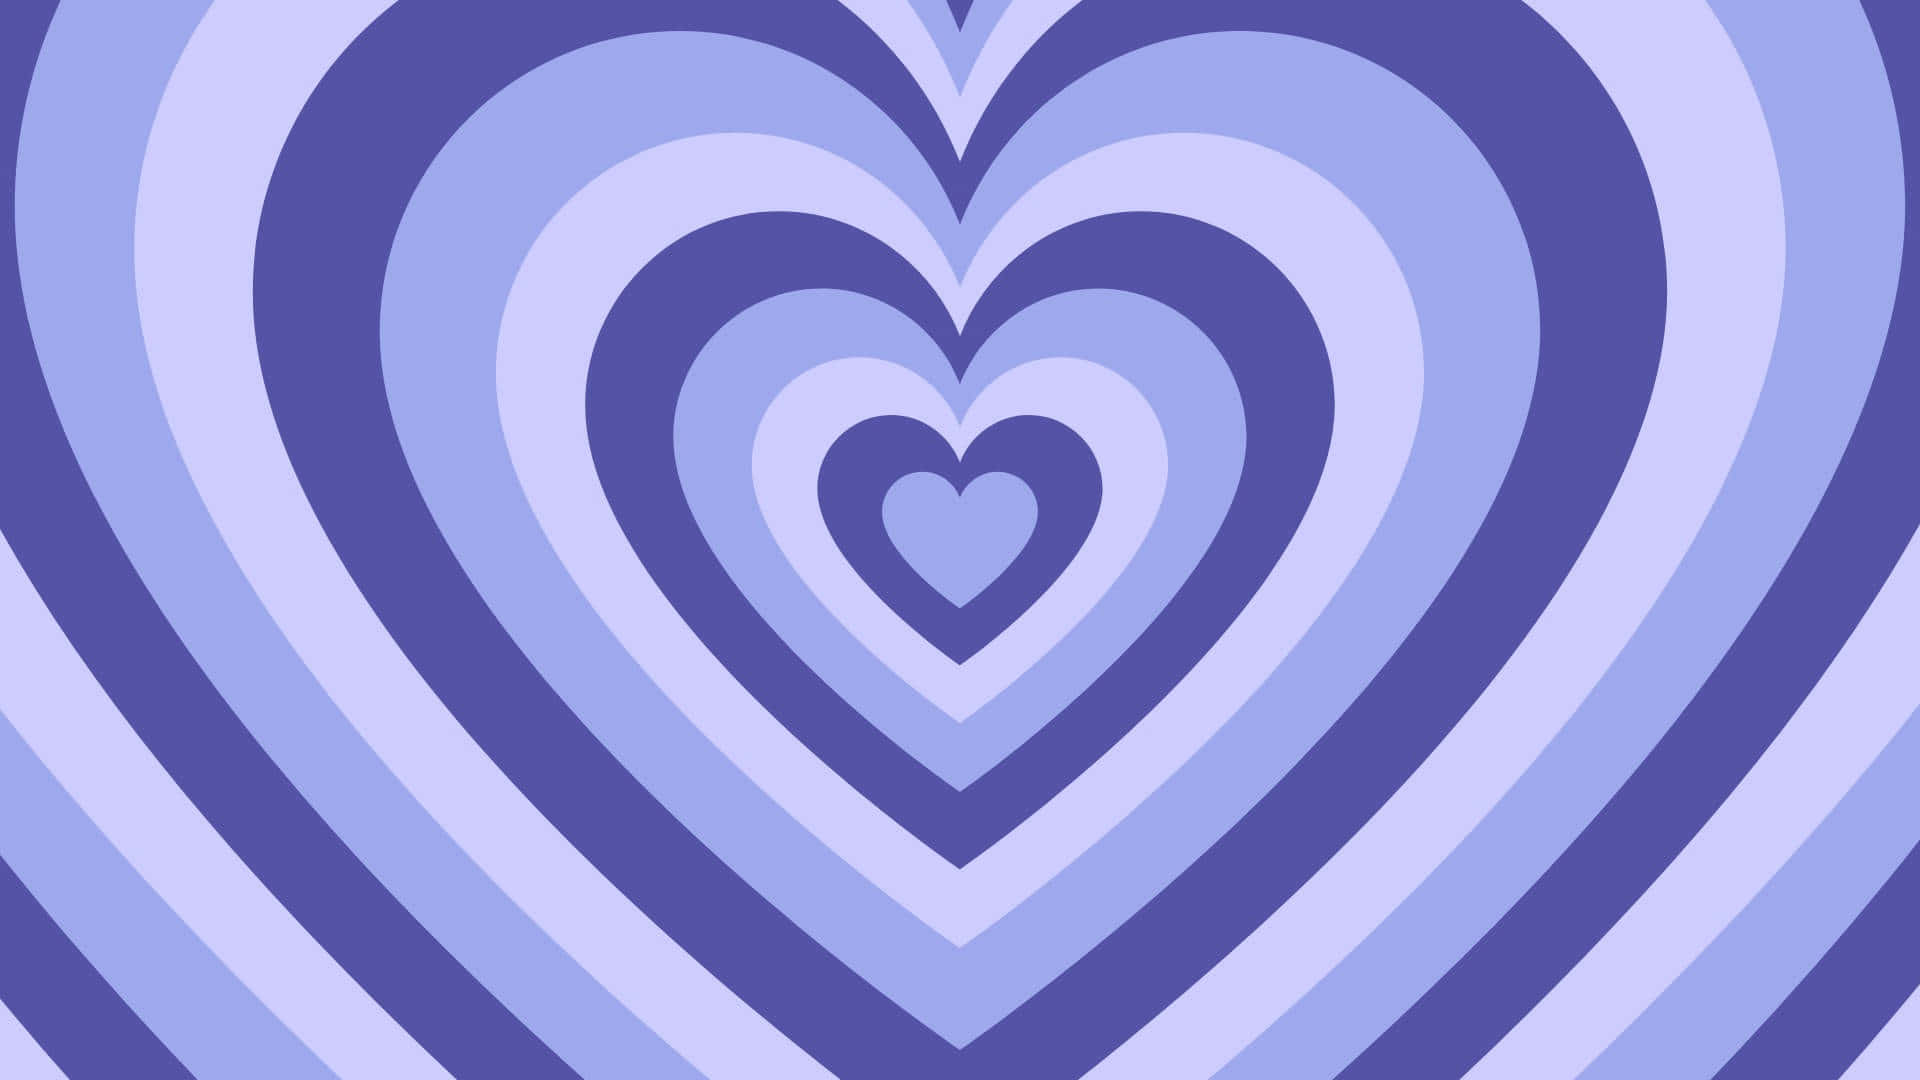 Periwinkle Hearts Pattern Wallpaper